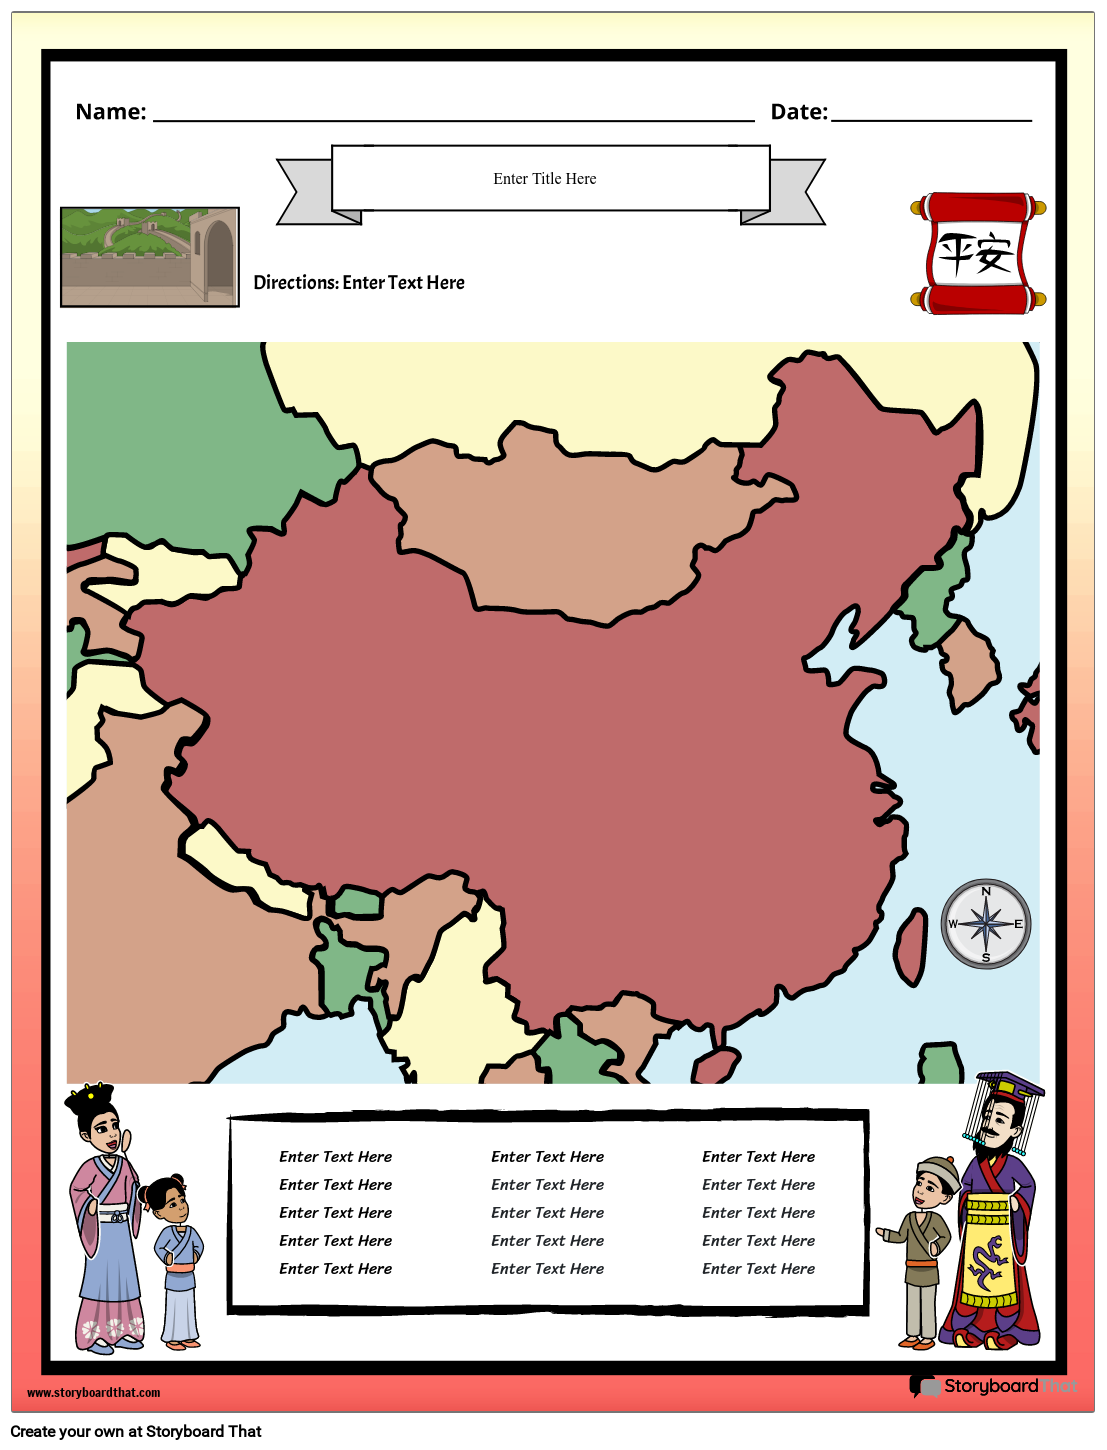 خريطة الصين القديمة